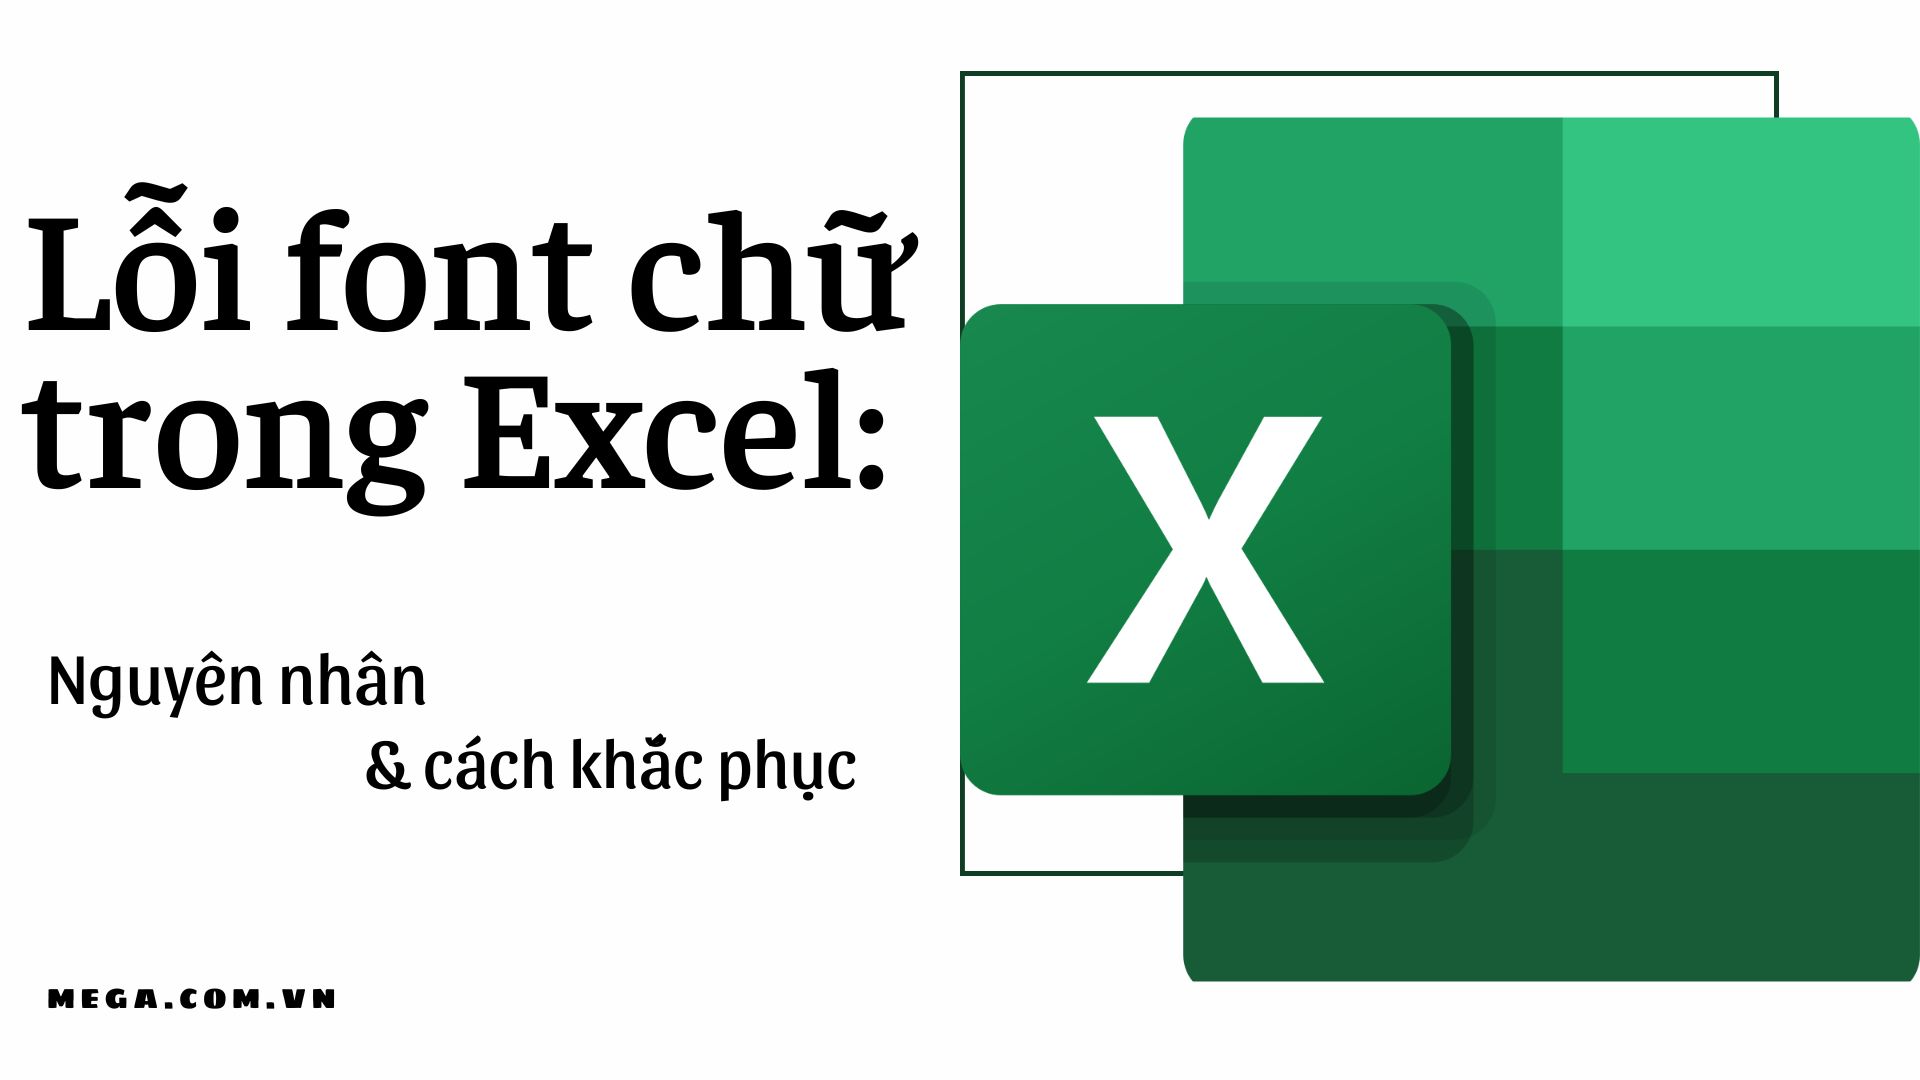 Lỗi font chữ Excel:
Đối với những người làm việc với Excel, lỗi font chữ là vấn đề thường gặp. Tuy nhiên, việc sửa lỗi font chữ Excel không còn là nỗi lo lắng nữa. Chúng tôi sẽ hướng dẫn bạn cách sửa lỗi font chữ Excel một cách chuyên nghiệp, đảm bảo không làm ảnh hưởng đến dữ liệu và công việc của bạn.